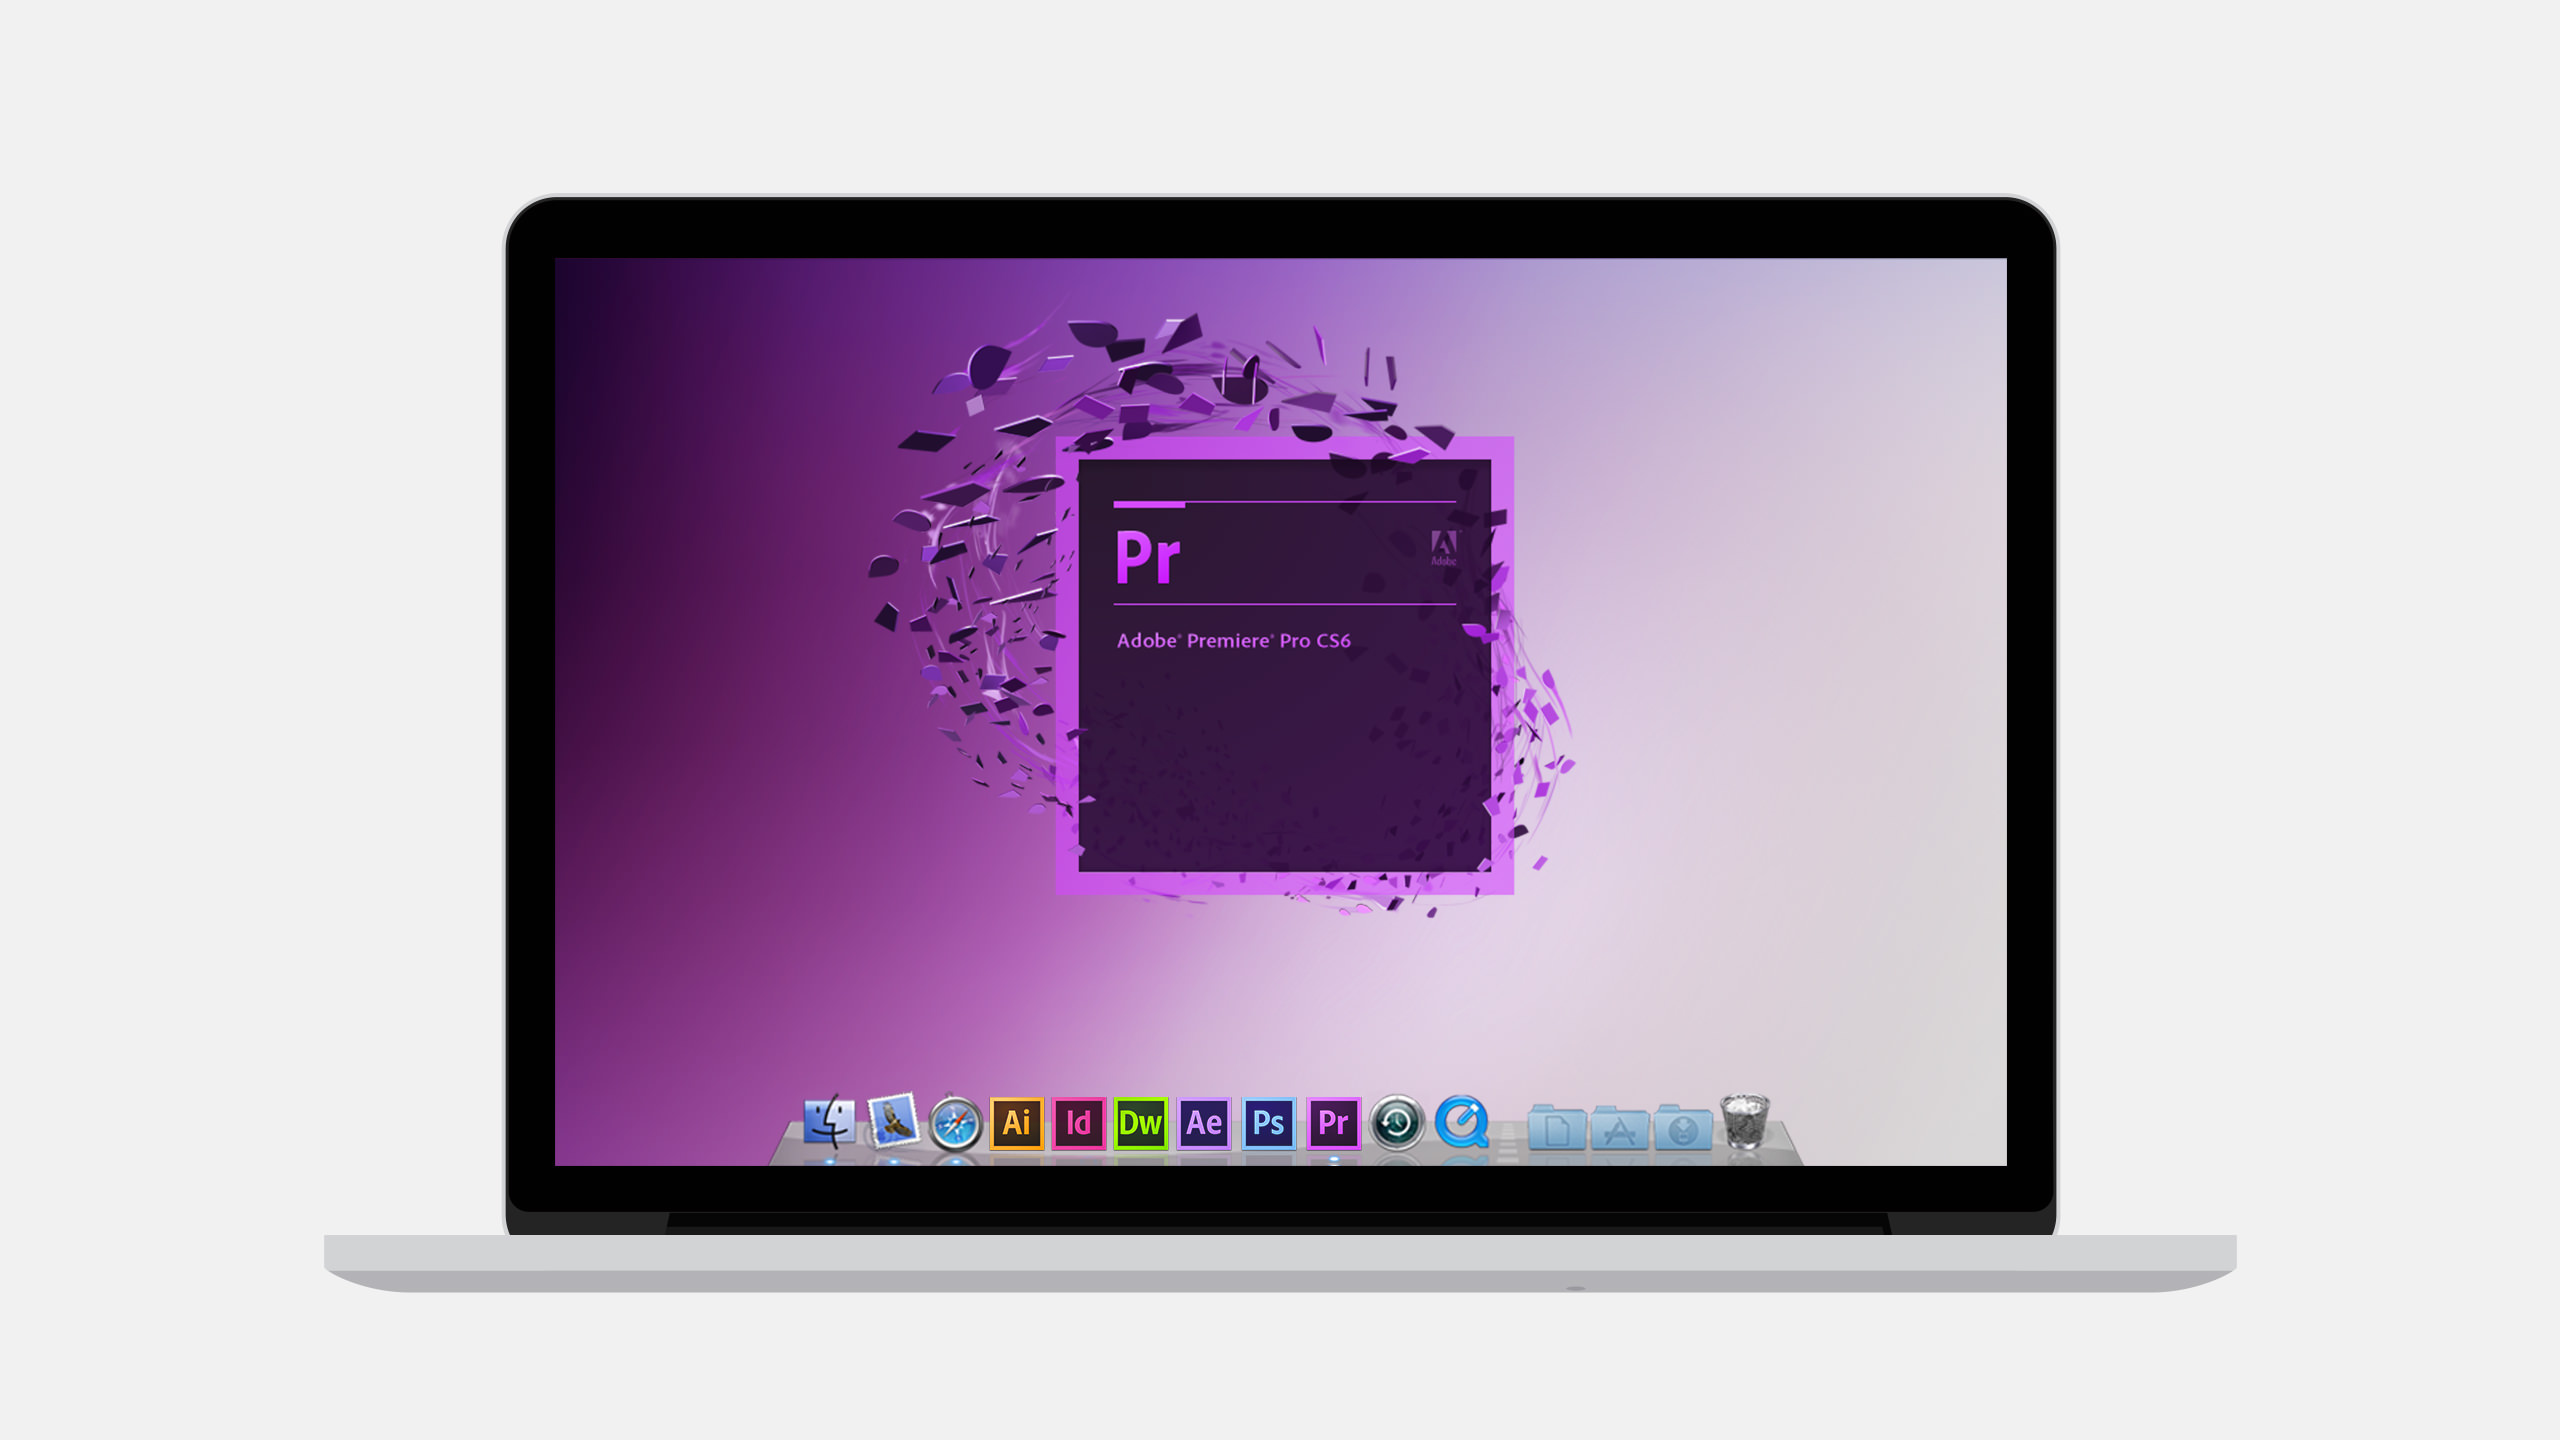 Adobe CS6 Premiere Pro Laptop splash screen